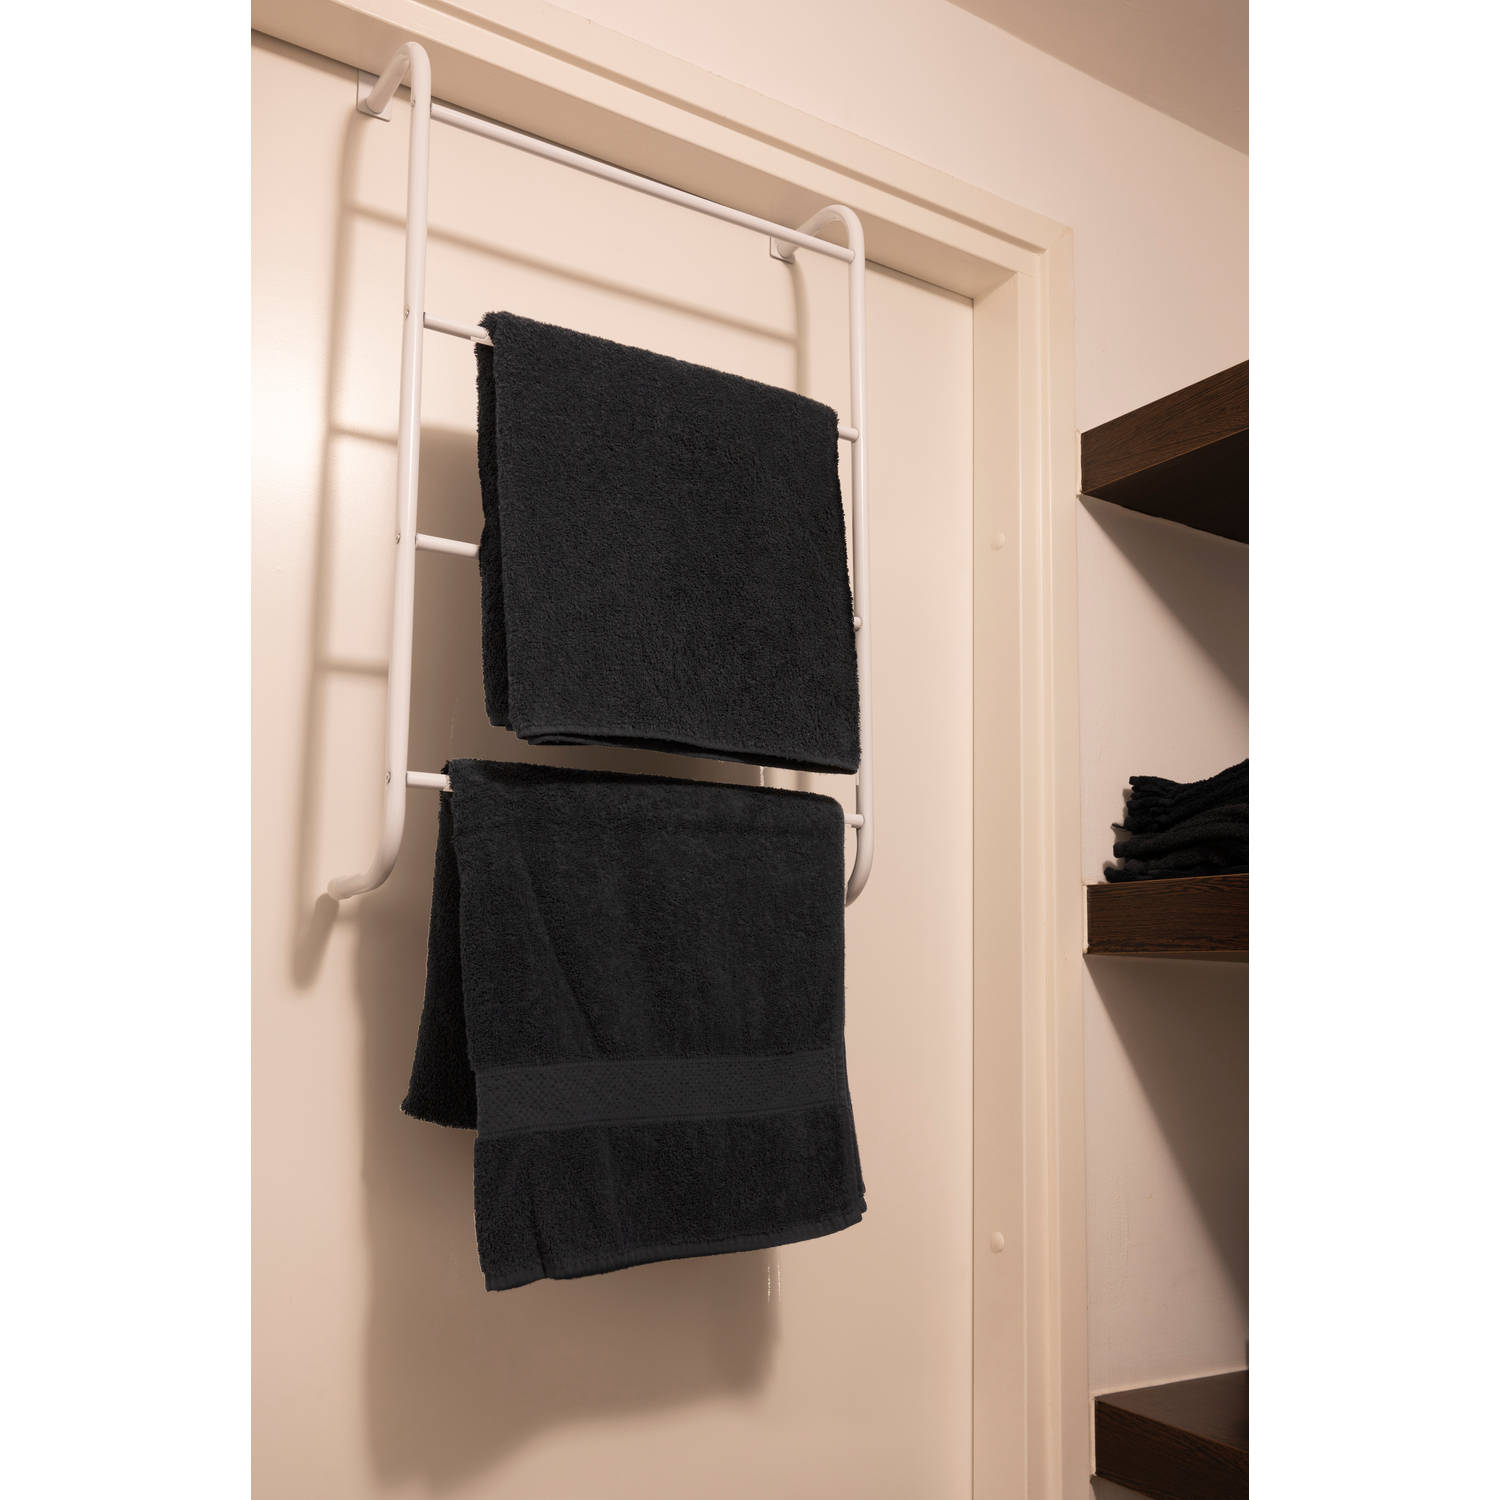 ozon Ongewijzigd vasthouden Hooks & Co Handdoekenrek voor aan de deur - 73 x44,5 x 15,5 cm | Blokker